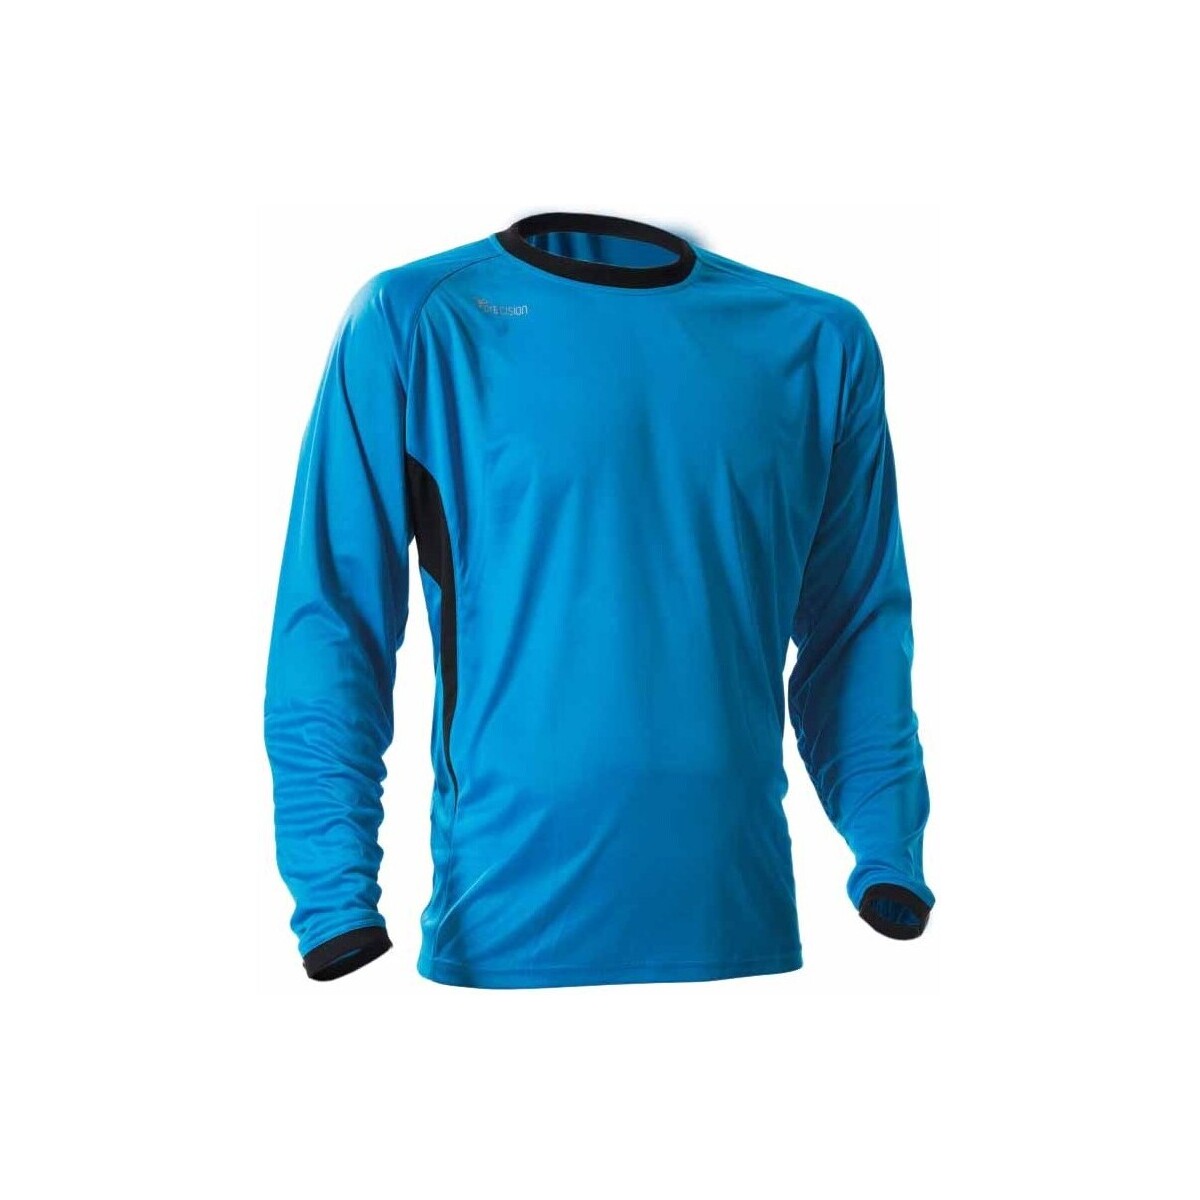 textil Tops y Camisetas Precision Premier Azul